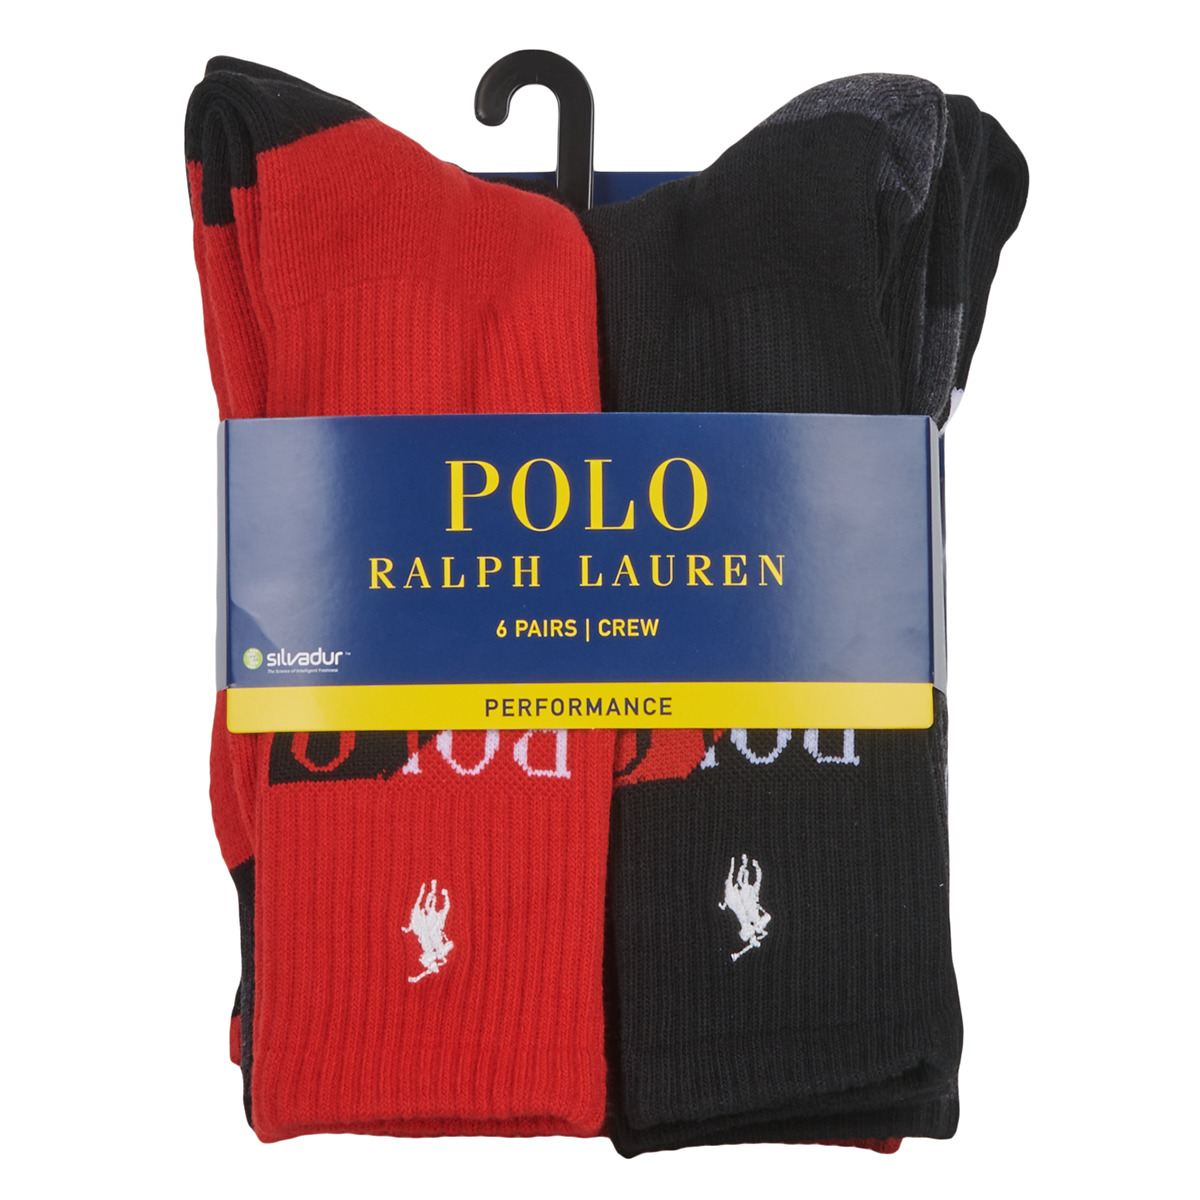 Polo Ralph Lauren Multicolore SPORT X6 7XknDpAz